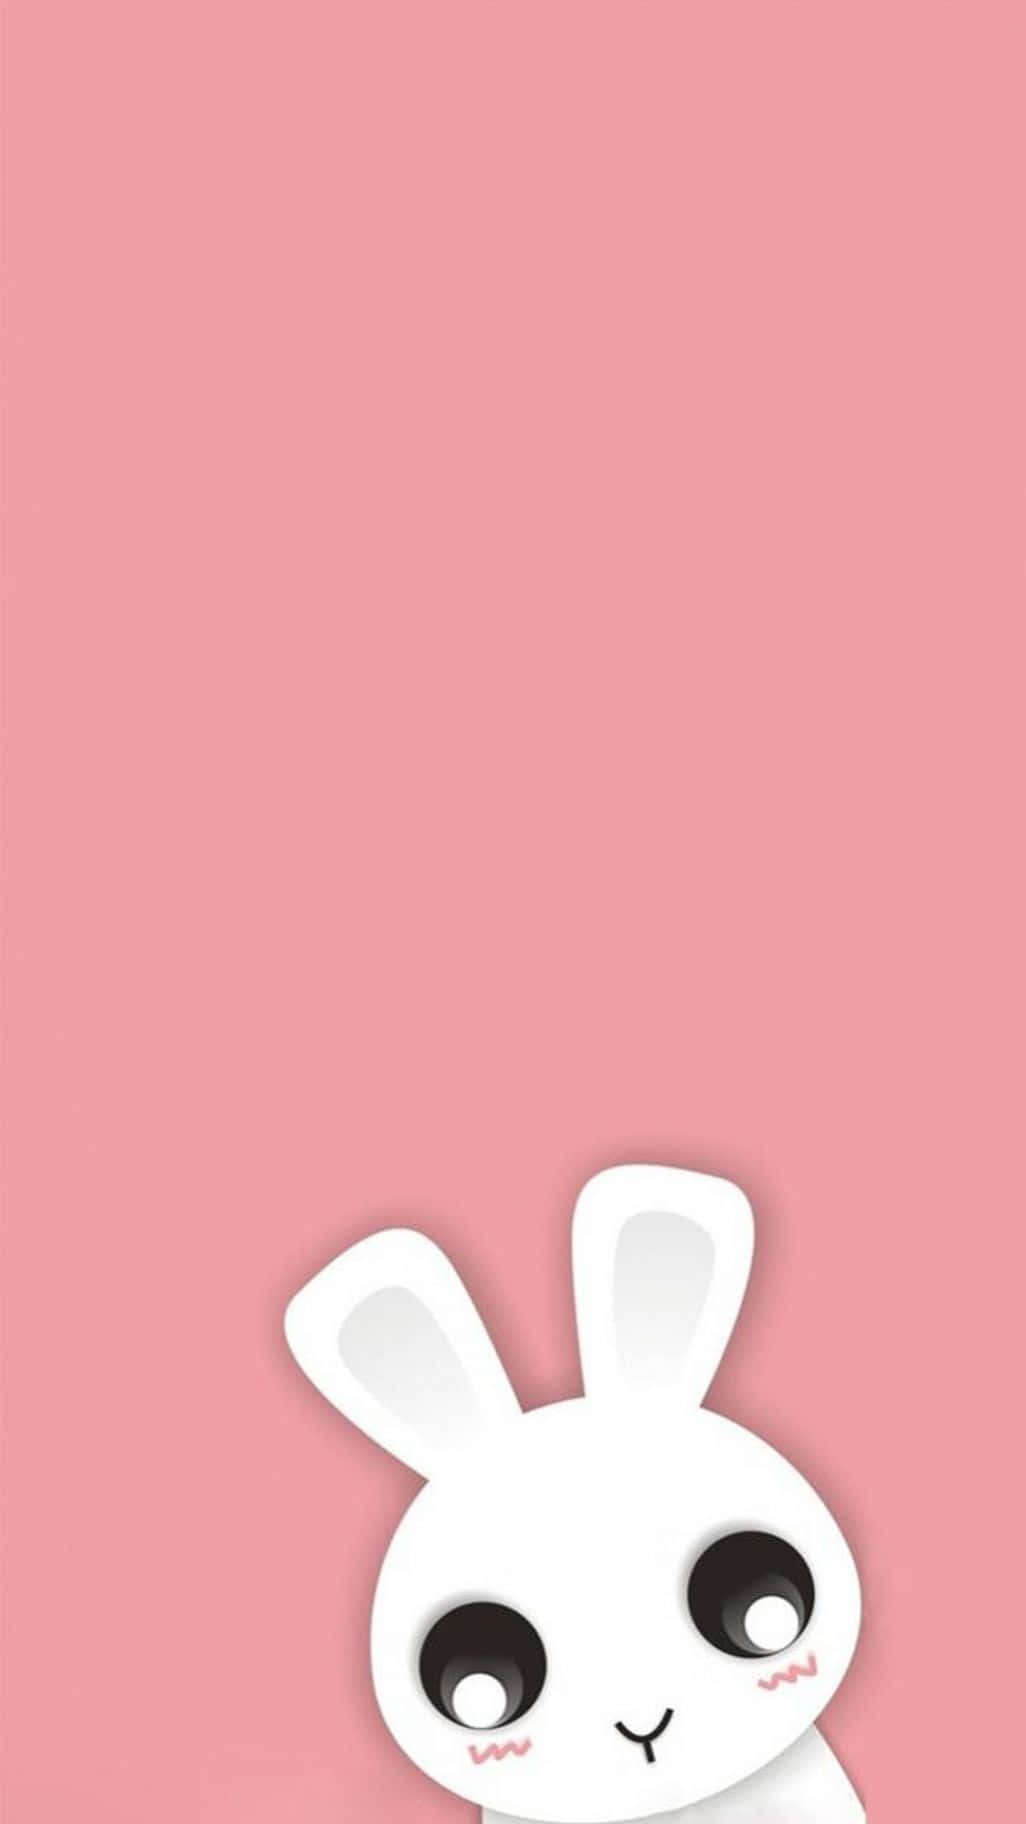 Fang øjeblikket med denne søde kanin og din Iphone! Wallpaper